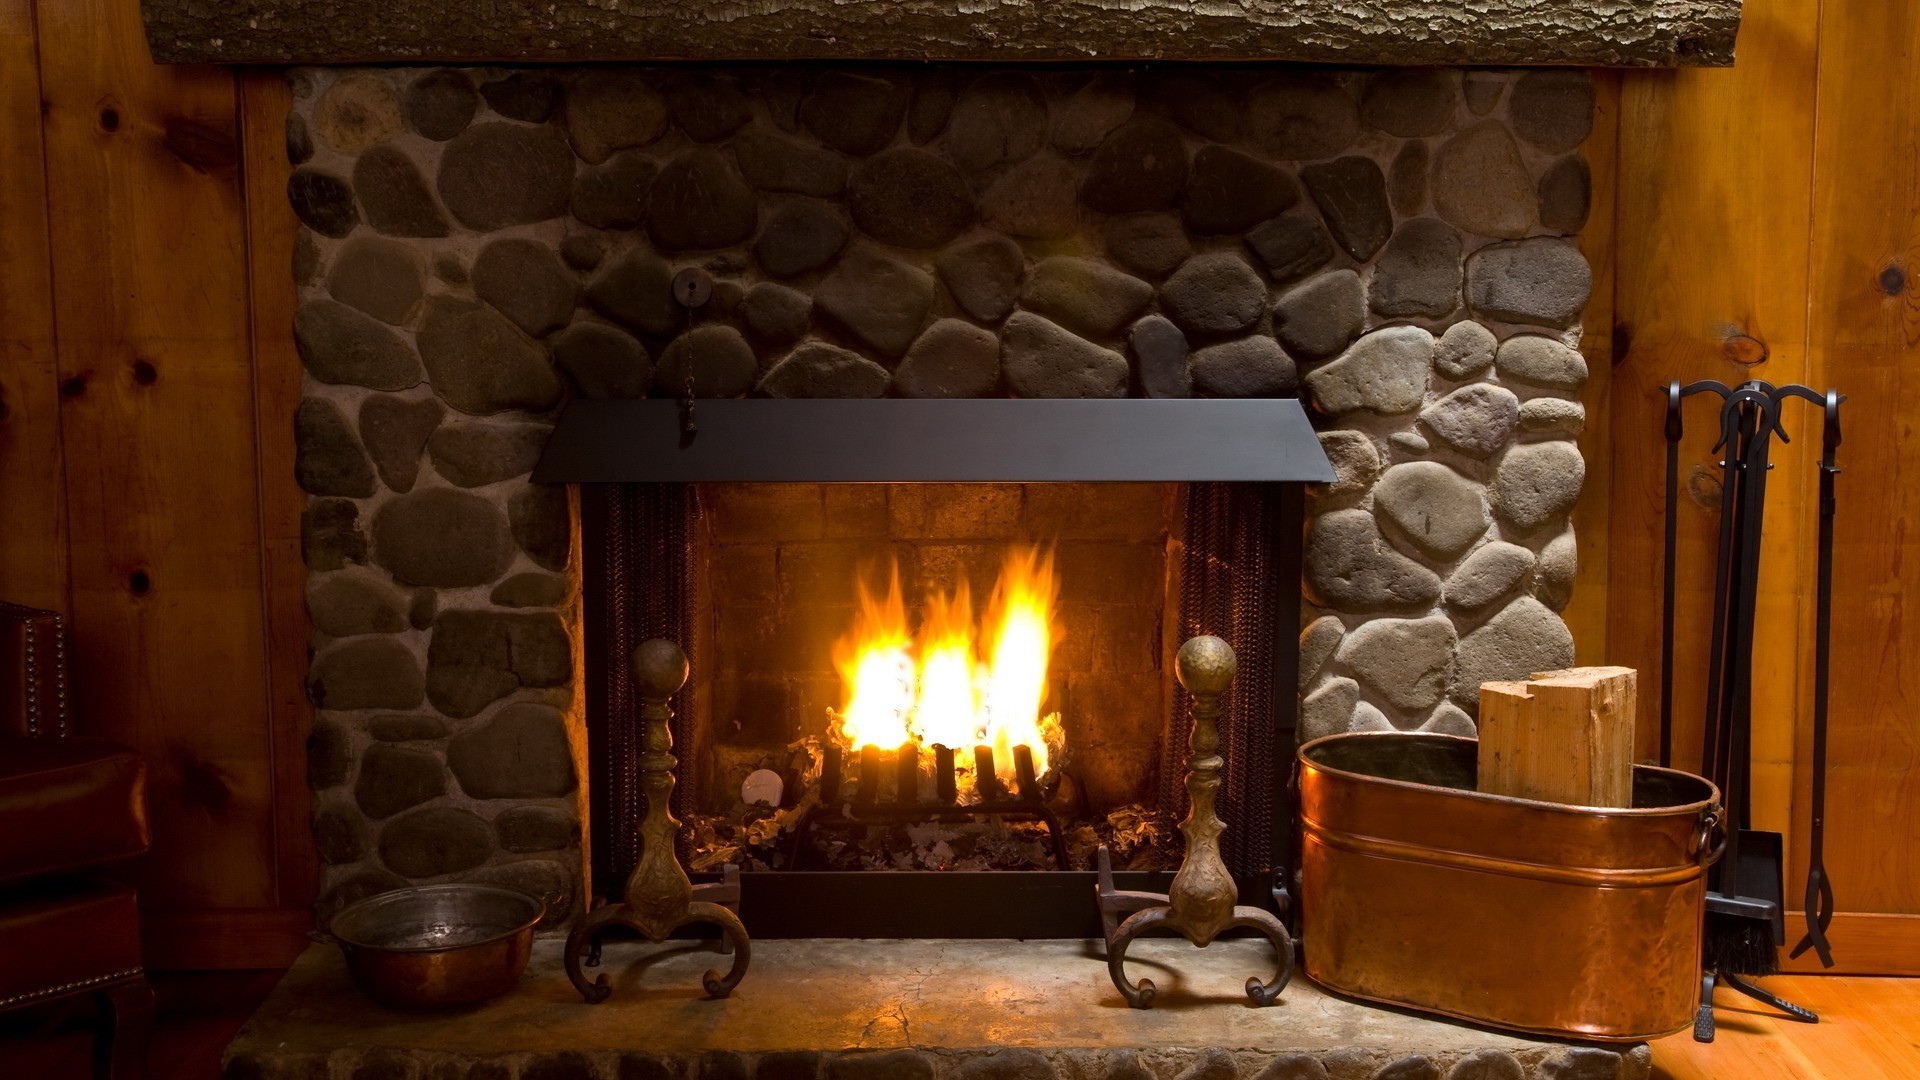 камин пламя номер дом древесины внутри мебель в помещении уютная семья дома стены архитектура тепло горячая сожгли таблица плита украшения